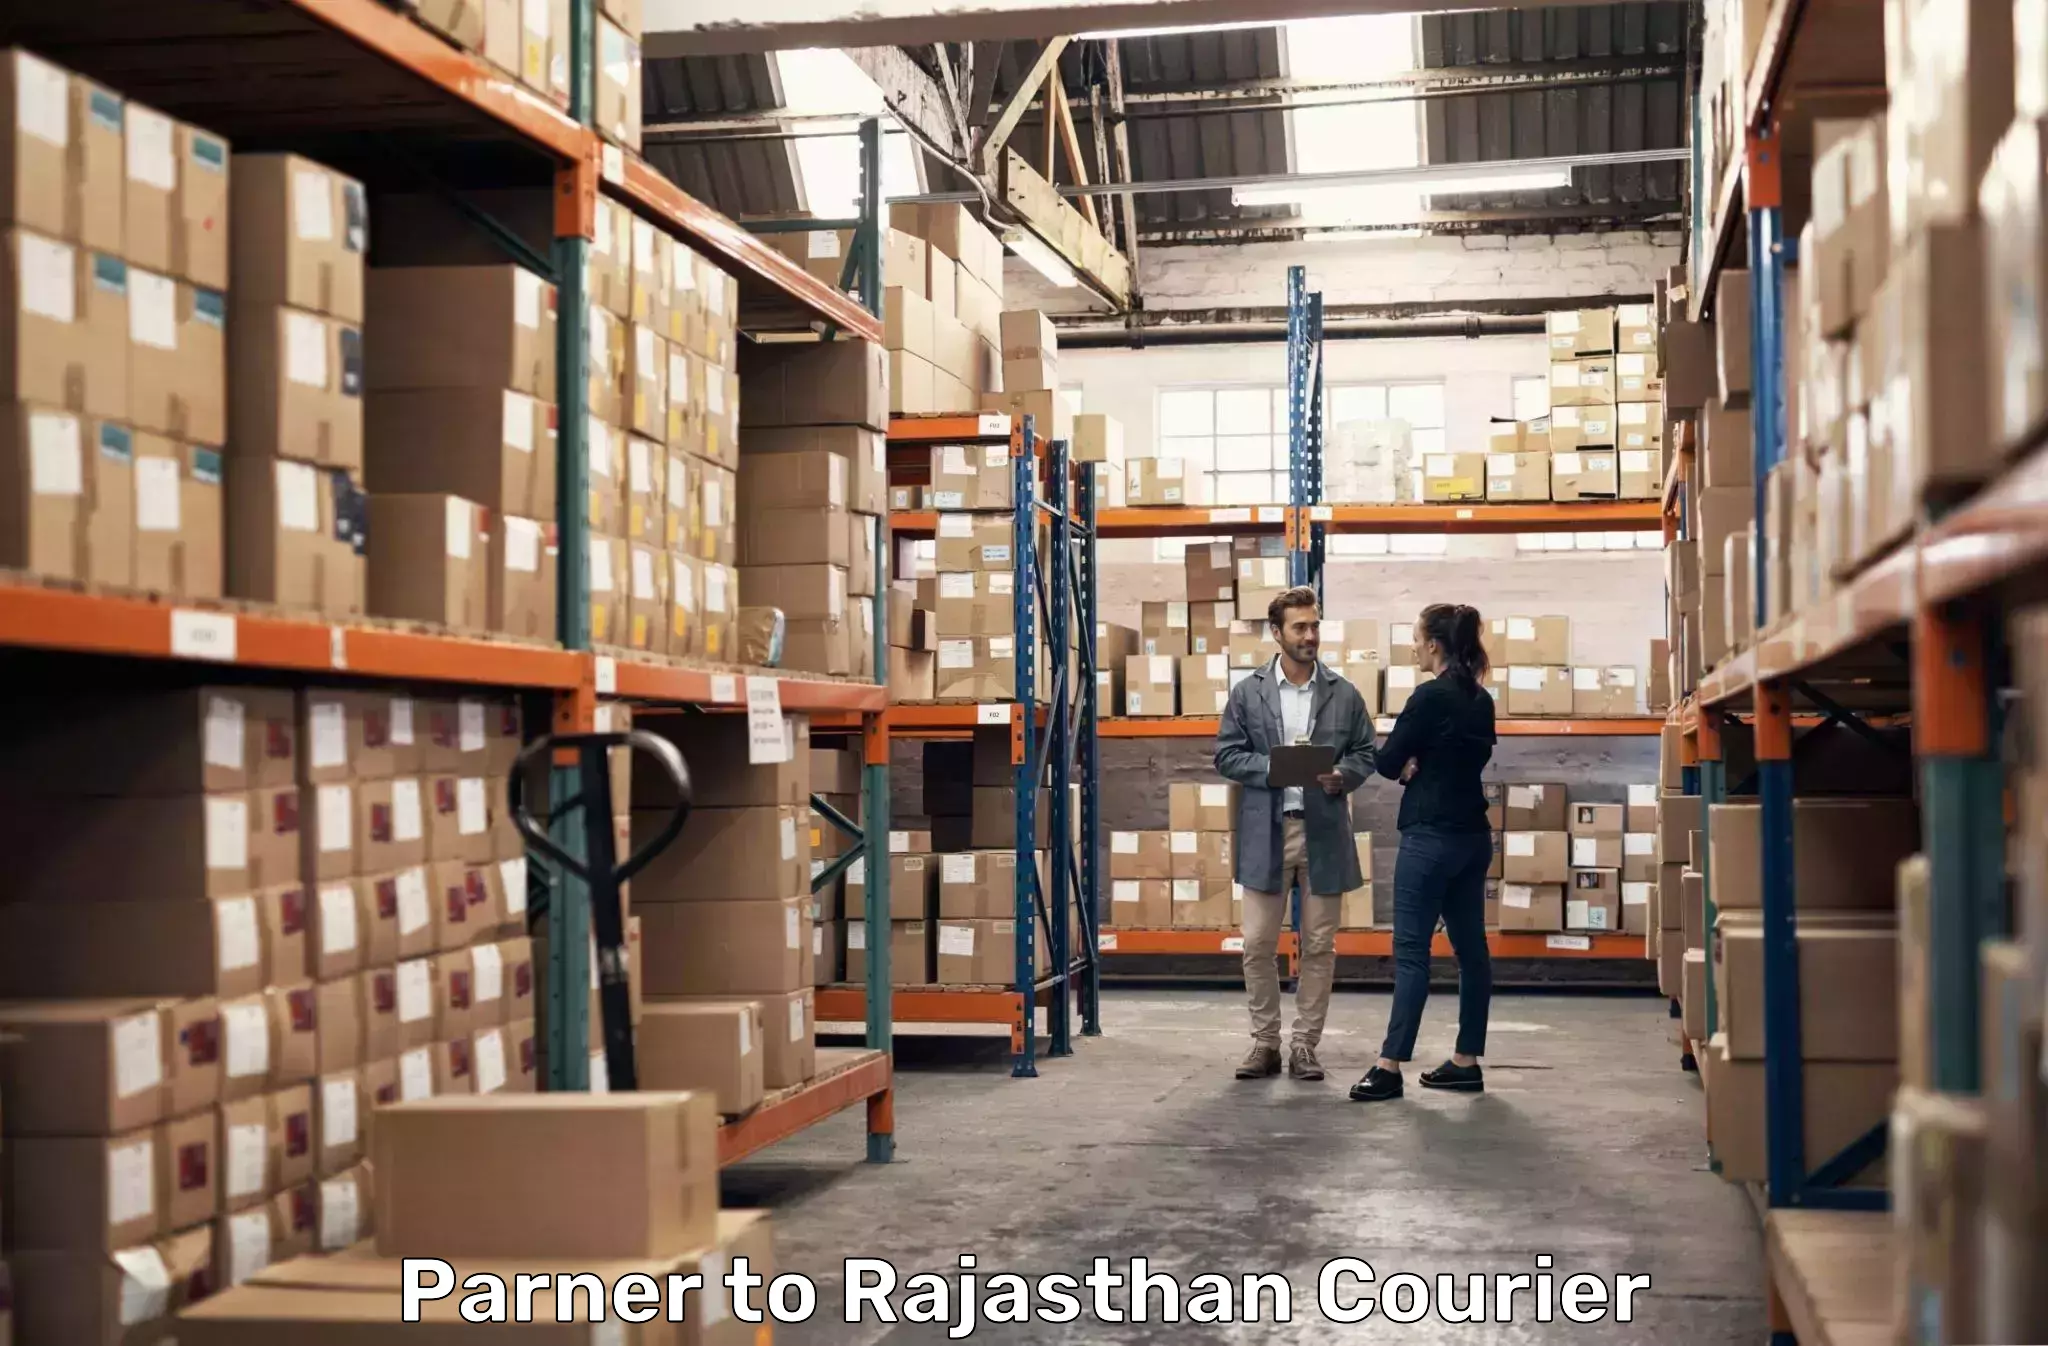 Global parcel delivery Parner to Udaipur